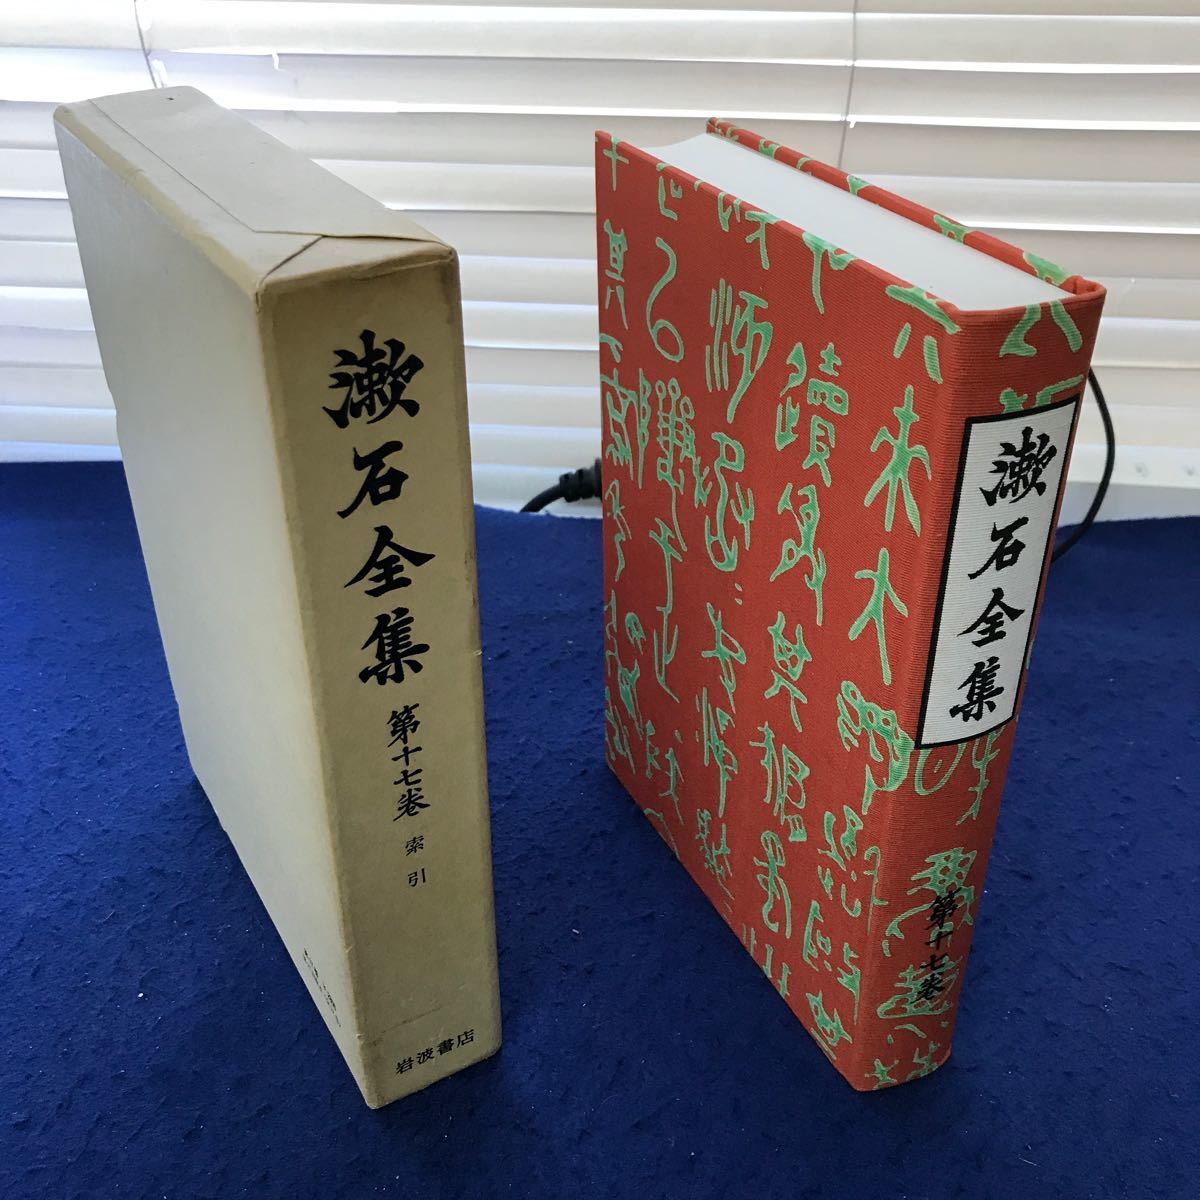 a56-010. камень полное собрание сочинений no. 10 7 шт .. Iwanami книжный магазин наружная коробка . царапина есть 